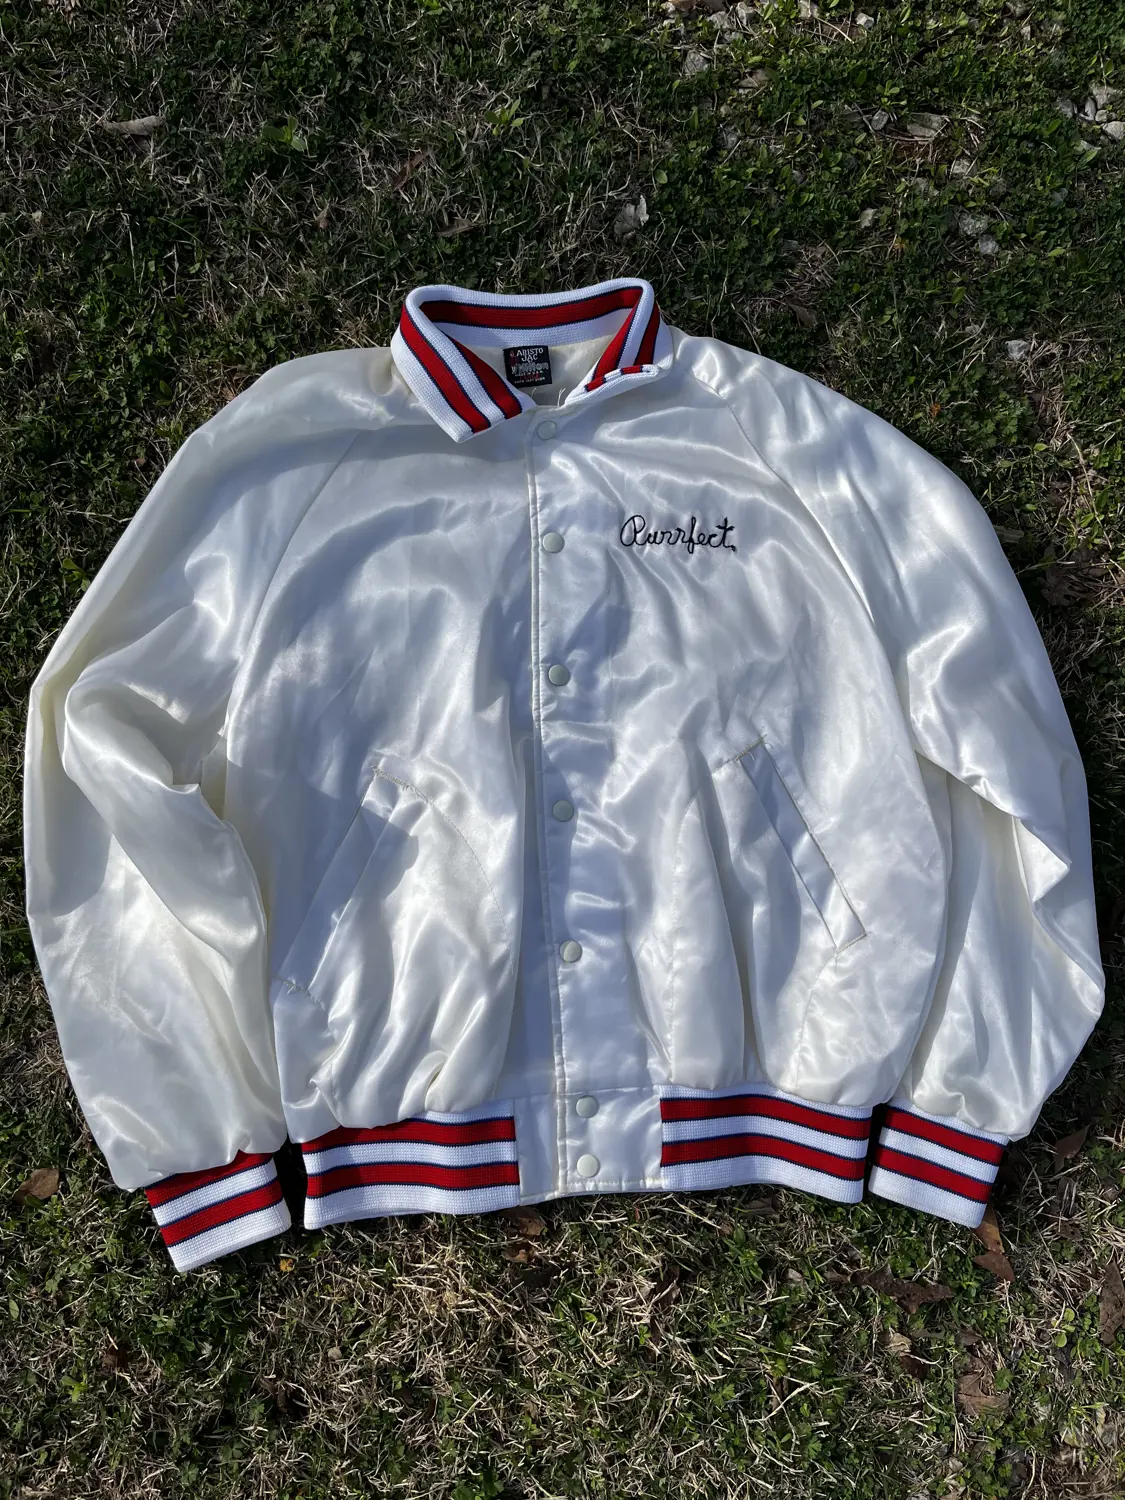 (L) Vintage 80’s Satin Jacket